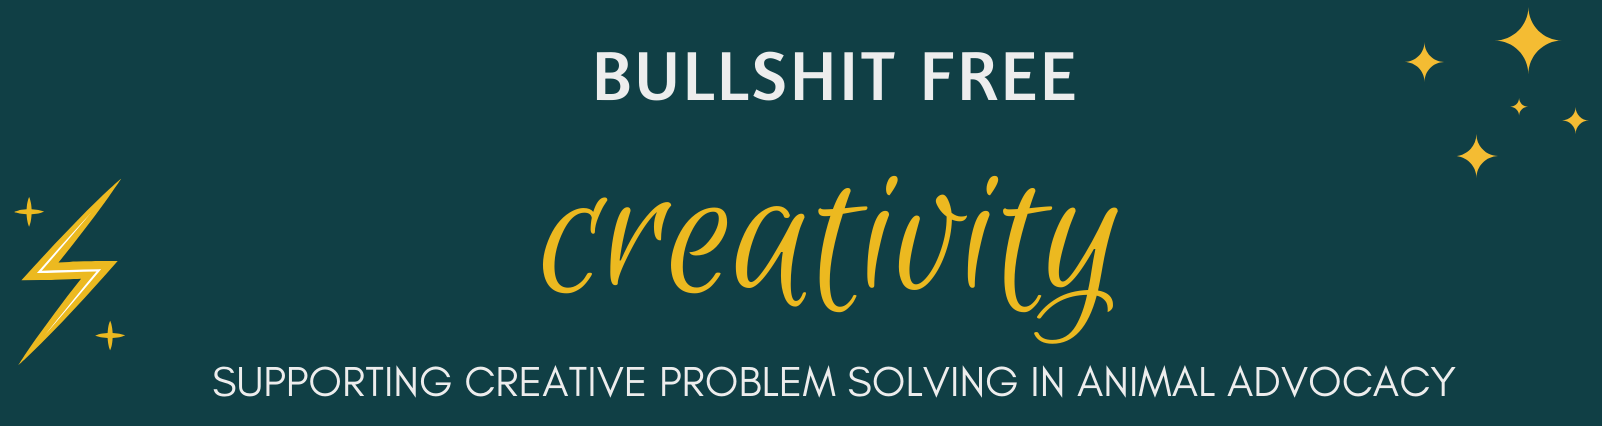 Bullshit Free Creativity